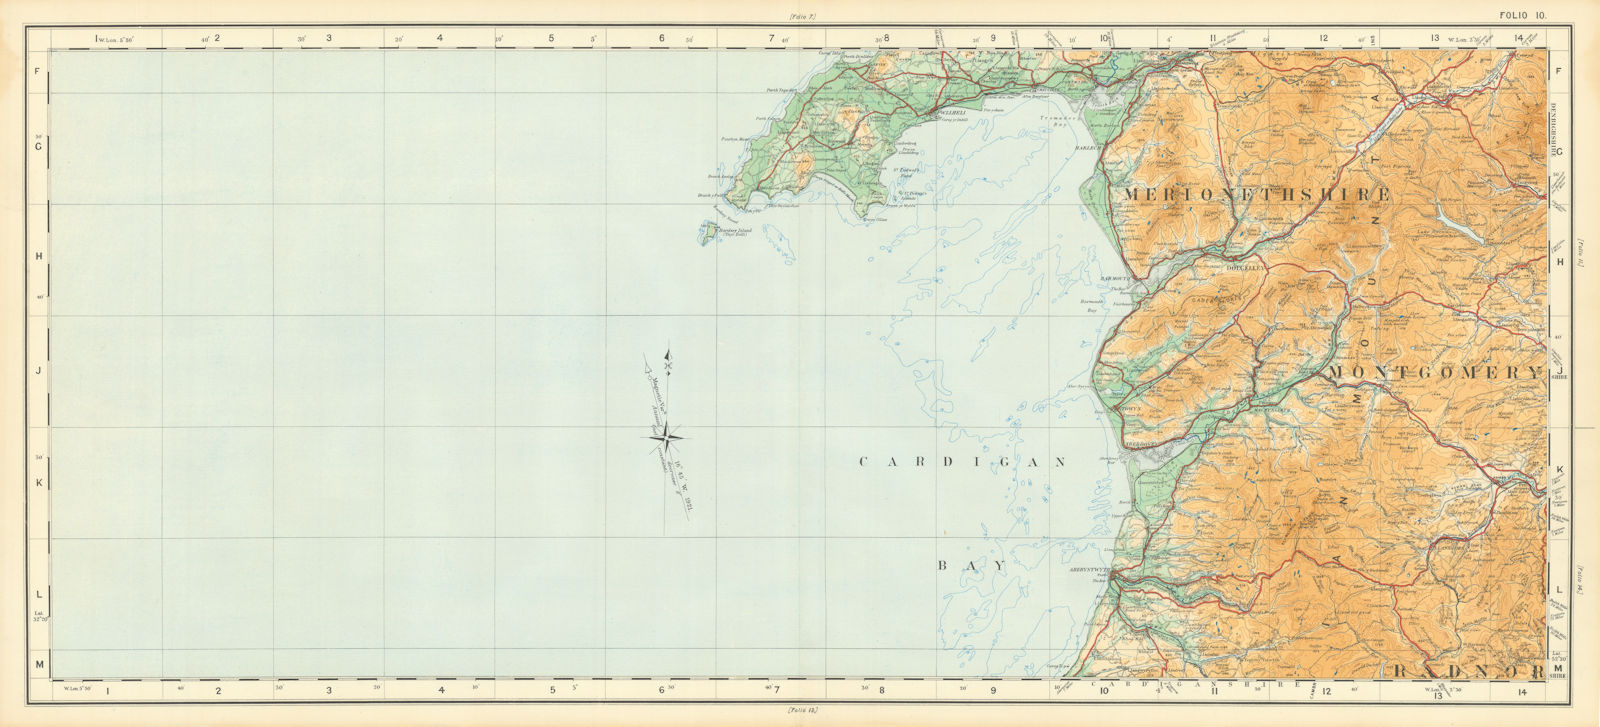 Cardigan Bay Snowdonia. Llyn peninsula Merionethshire ORDNANCE SURVEY 1922 map